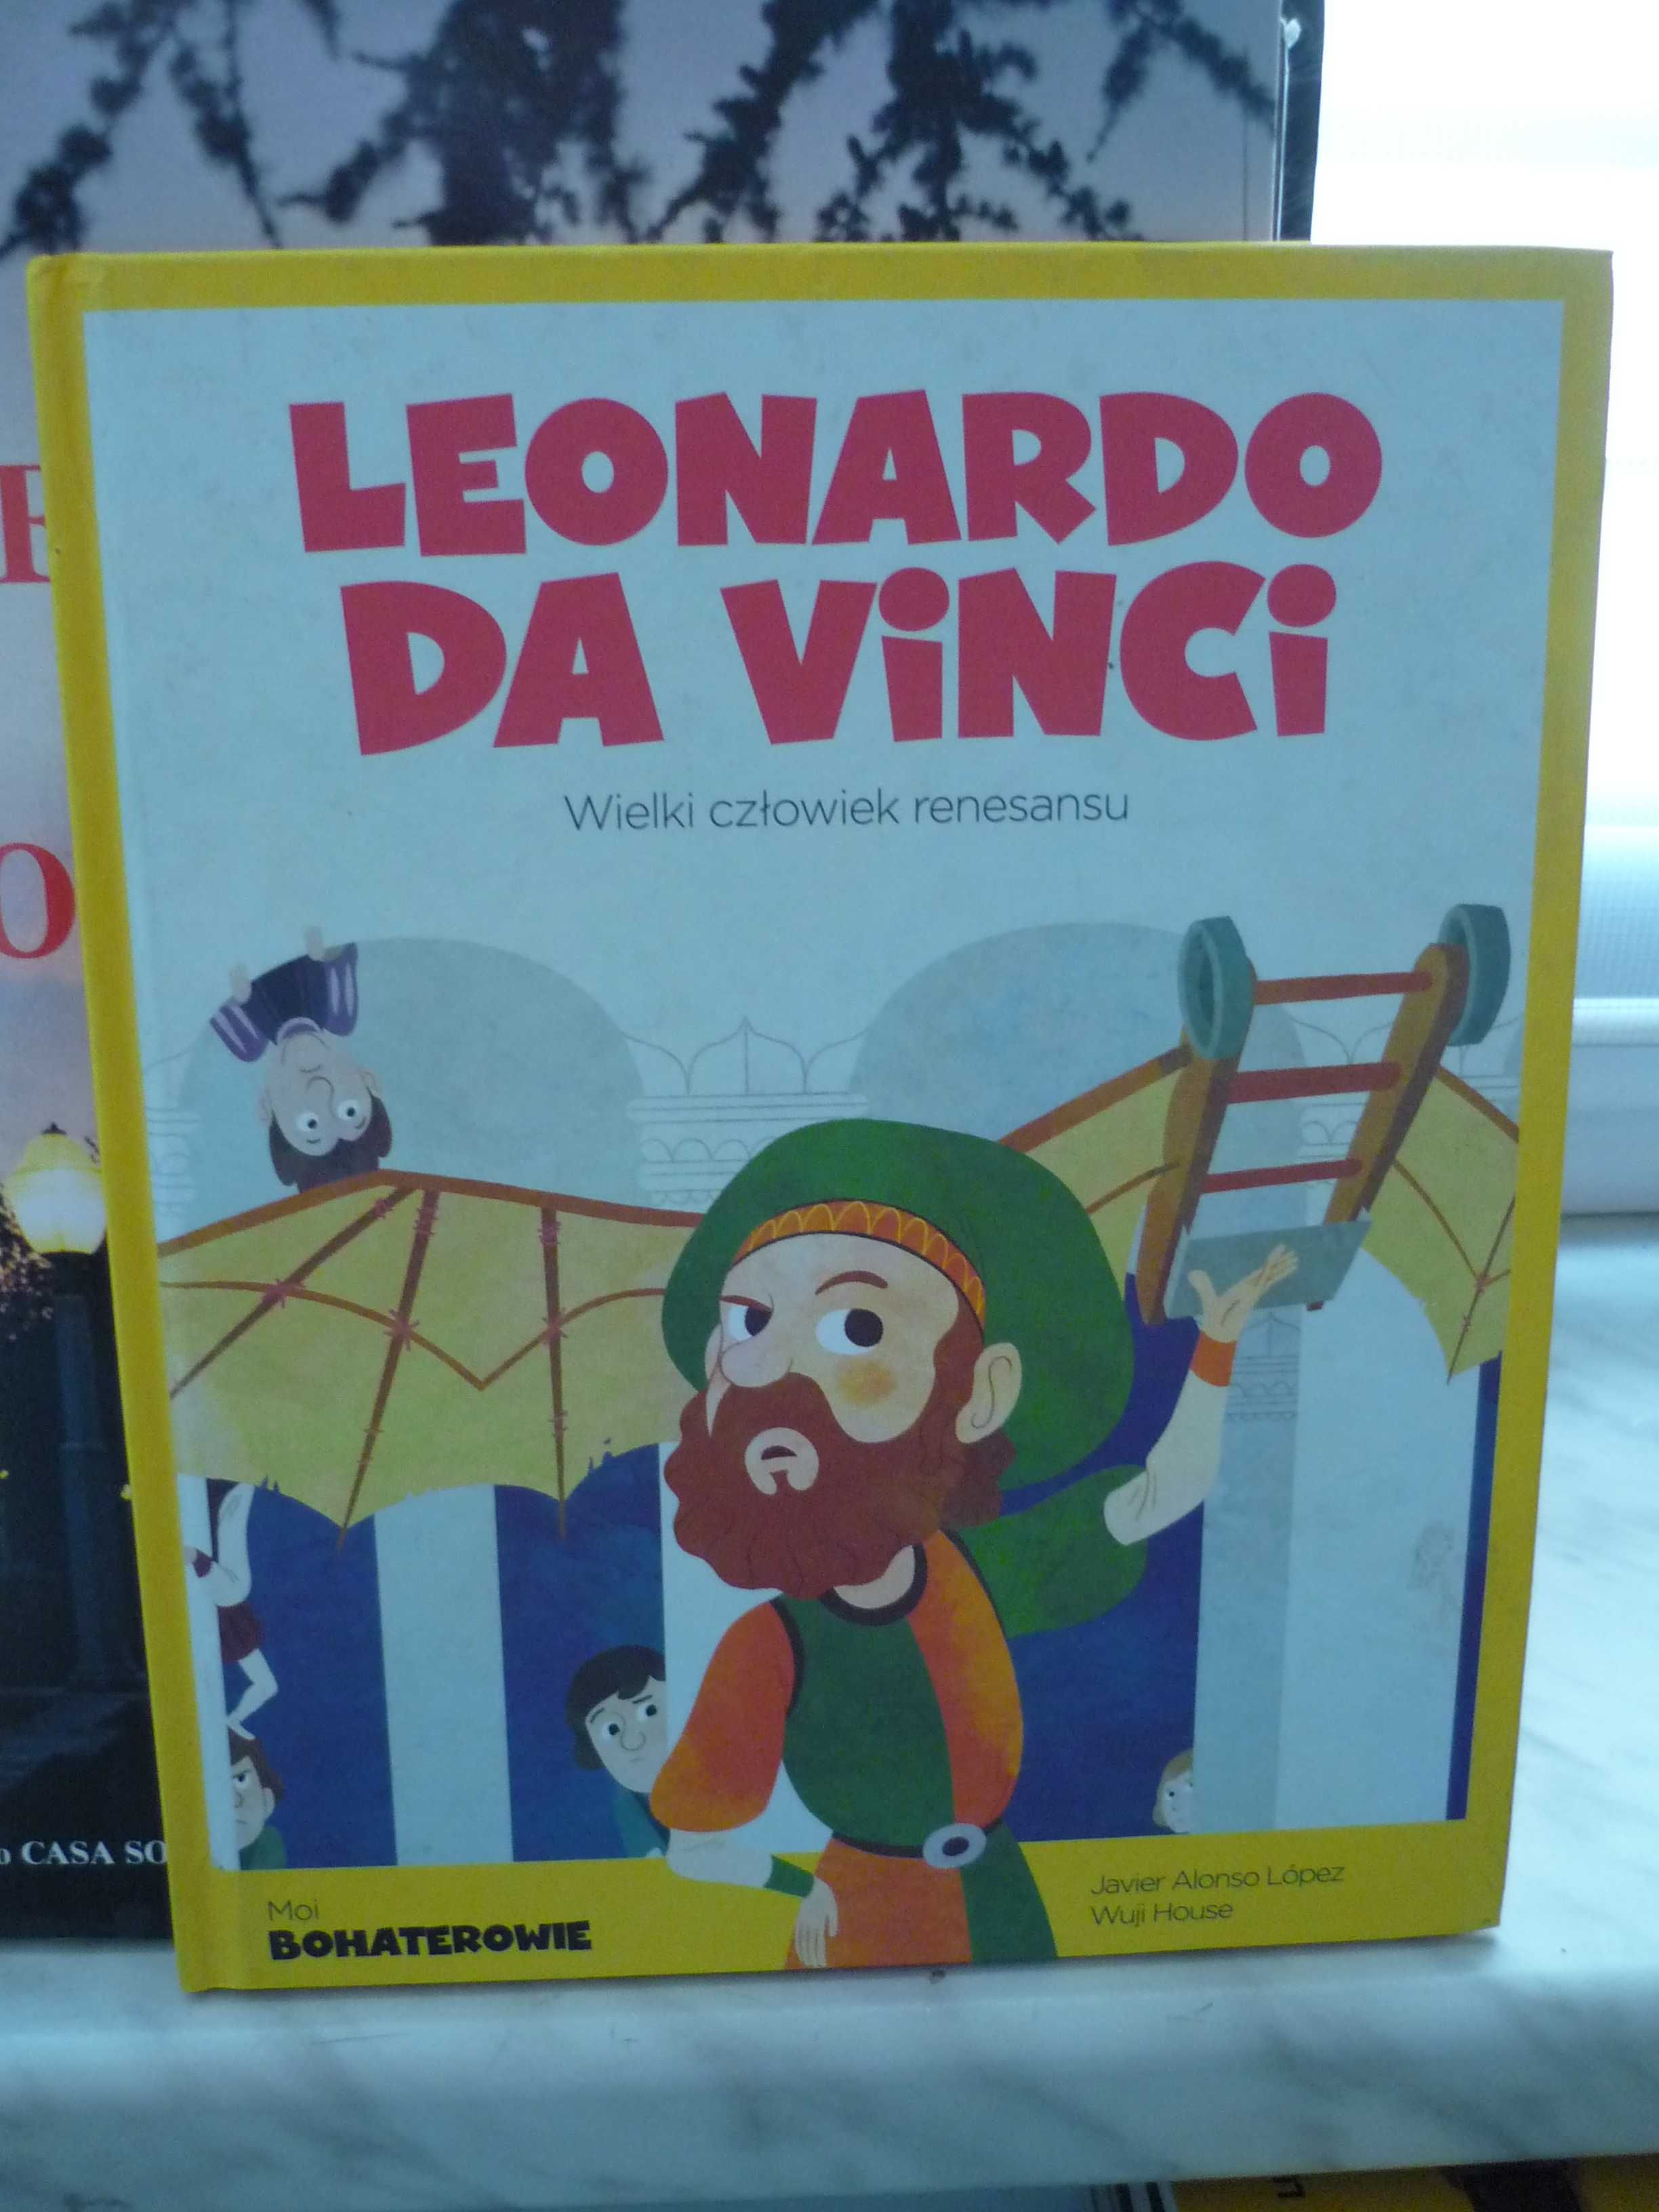 Leonardo da Vinci , Wielki człowiek renesansu.